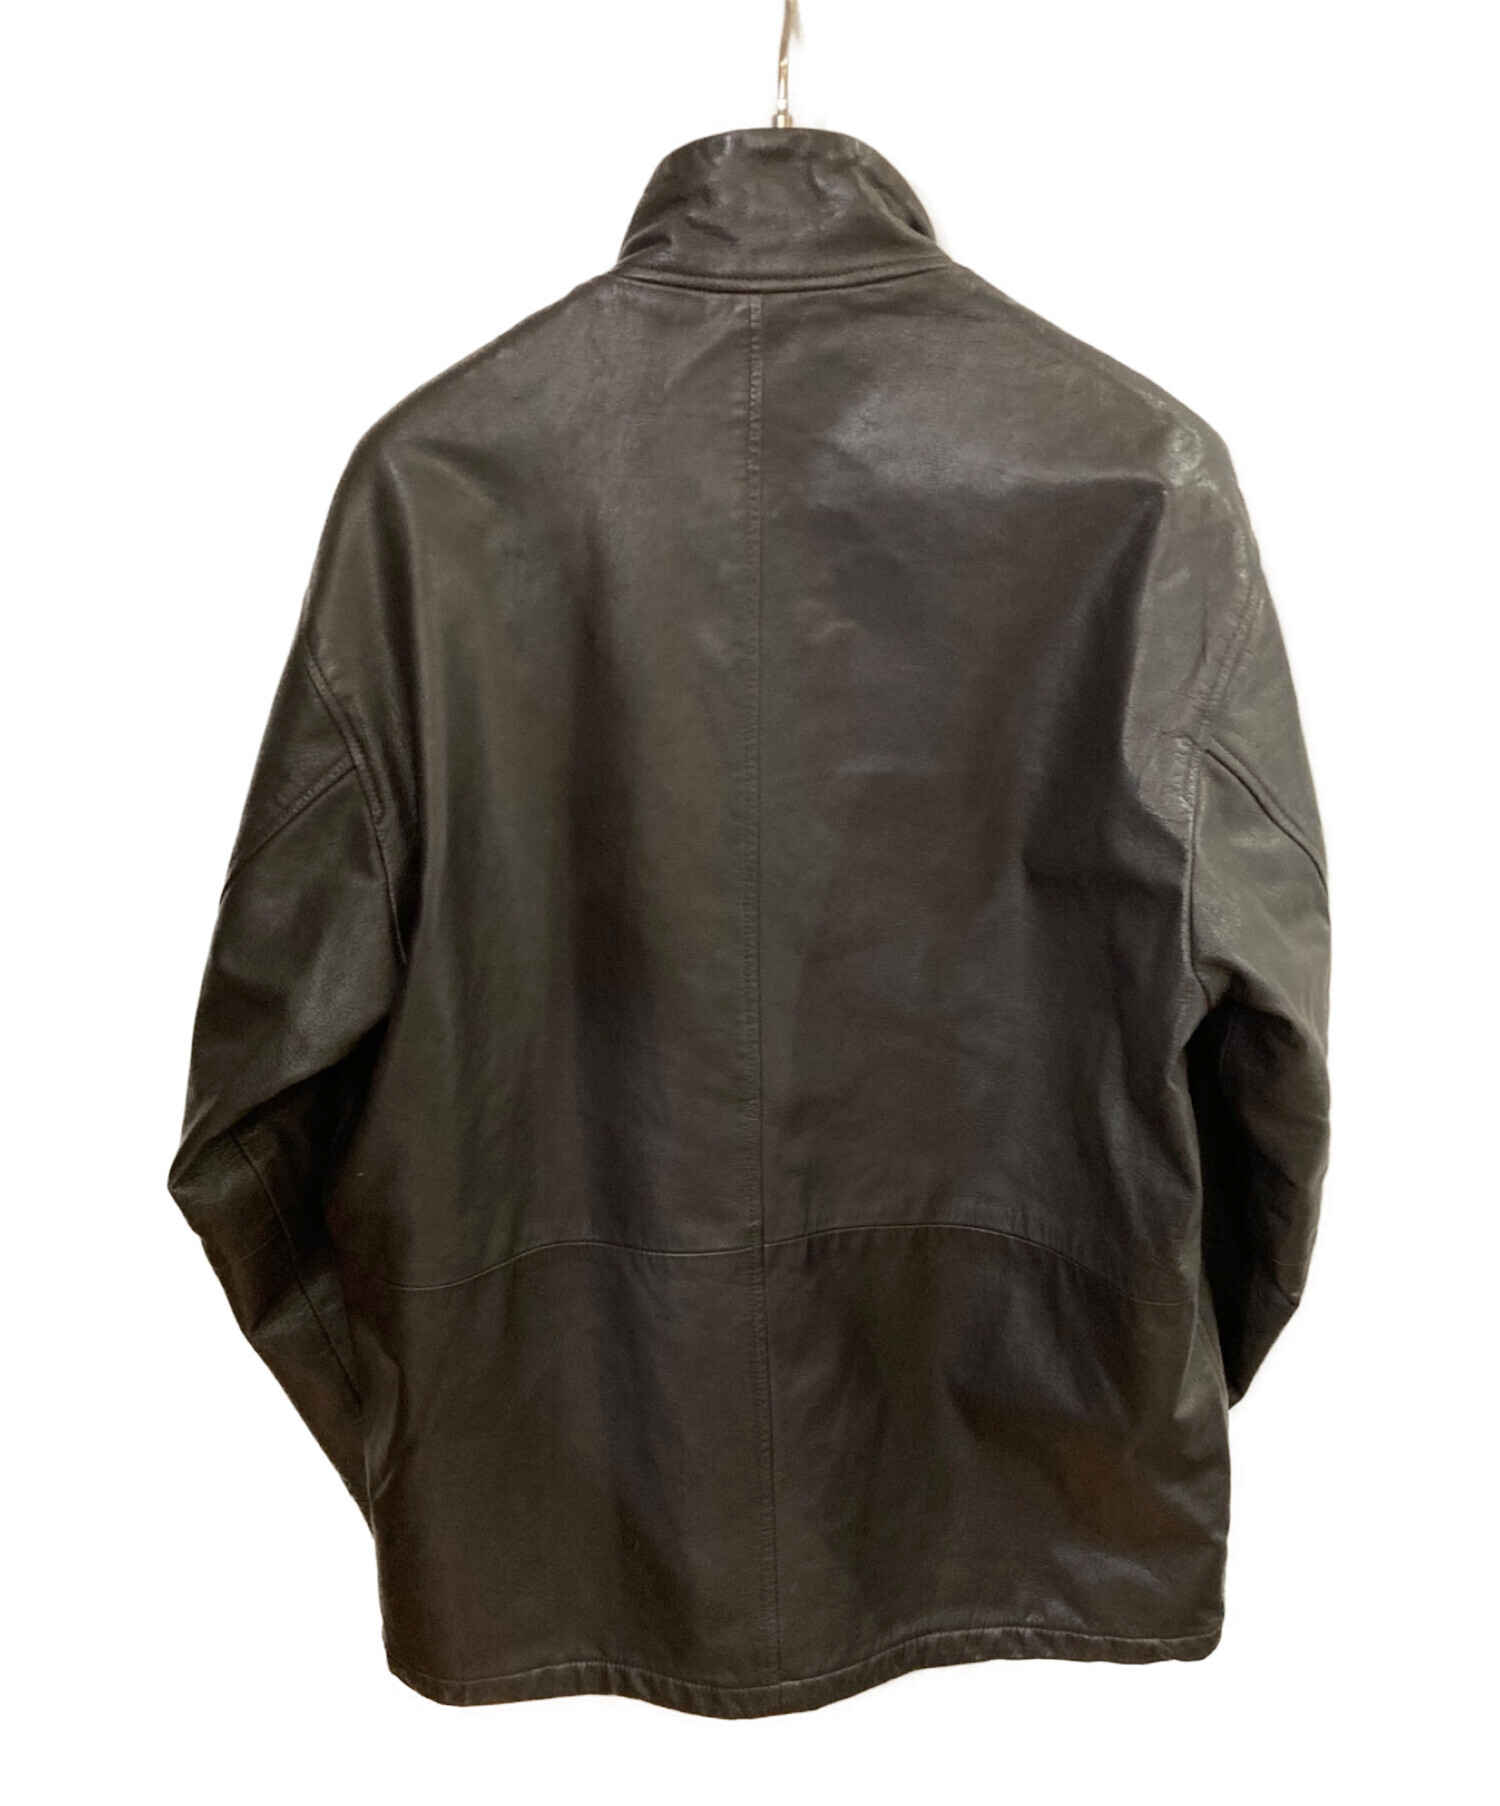 ARMANI COLLEZIONI (アルマーニ コレツィオーニ) ゴートレザージャケット ブラック サイズ:46